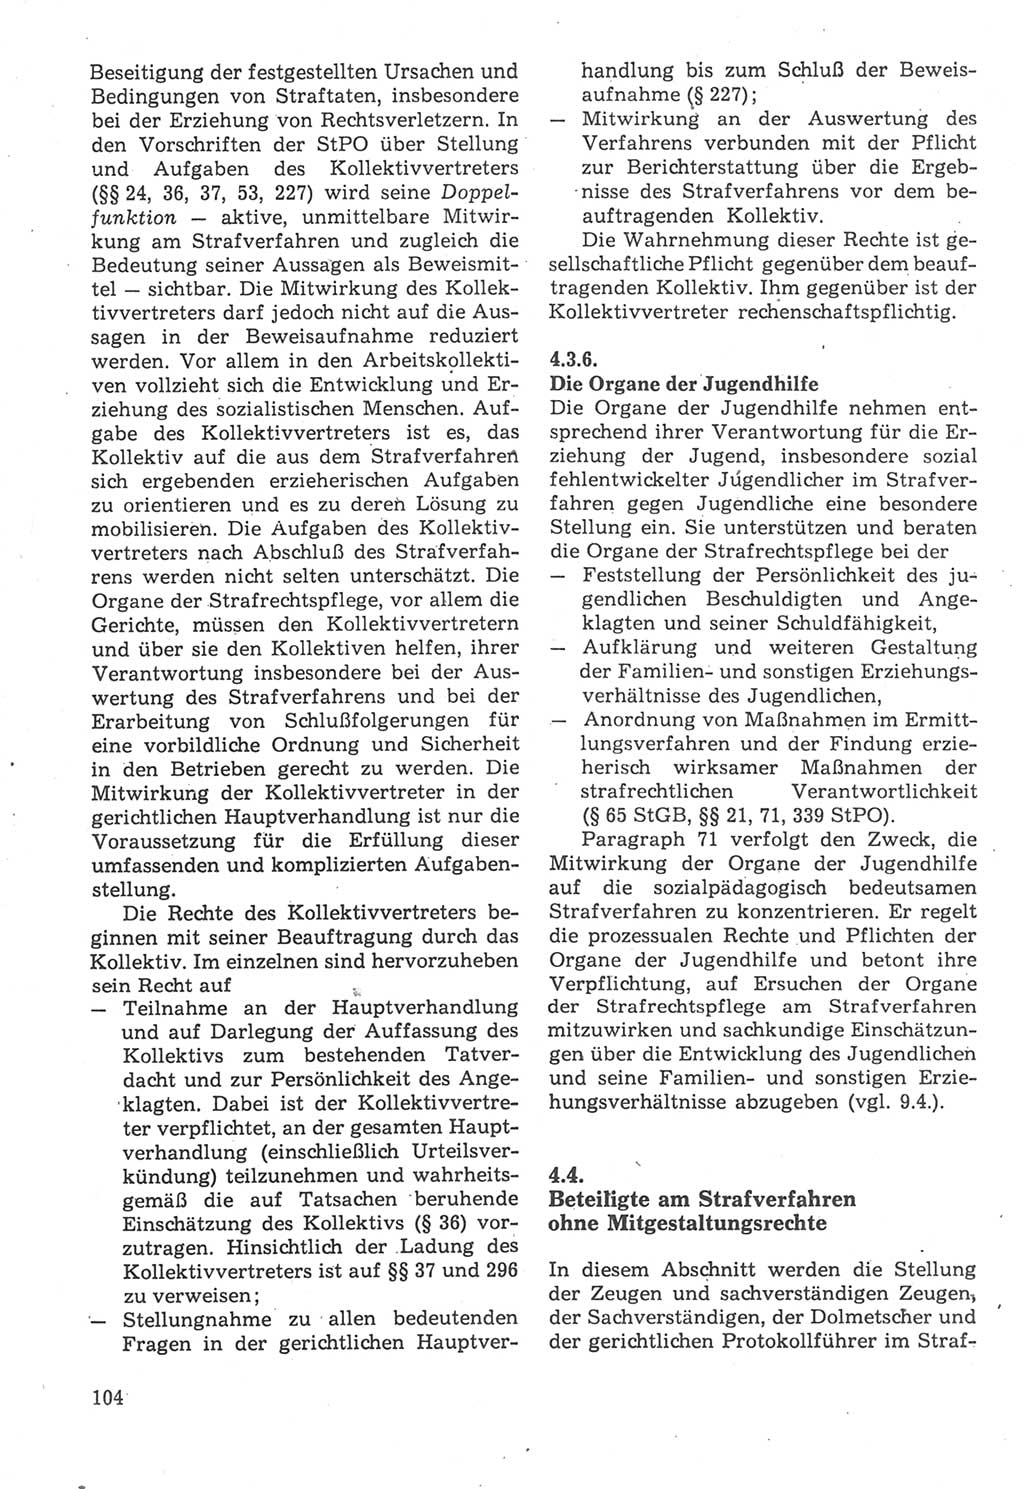 Strafverfahrensrecht [Deutsche Demokratische Republik (DDR)], Lehrbuch 1987, Seite 104 (Strafverf.-R. DDR Lb. 1987, S. 104)